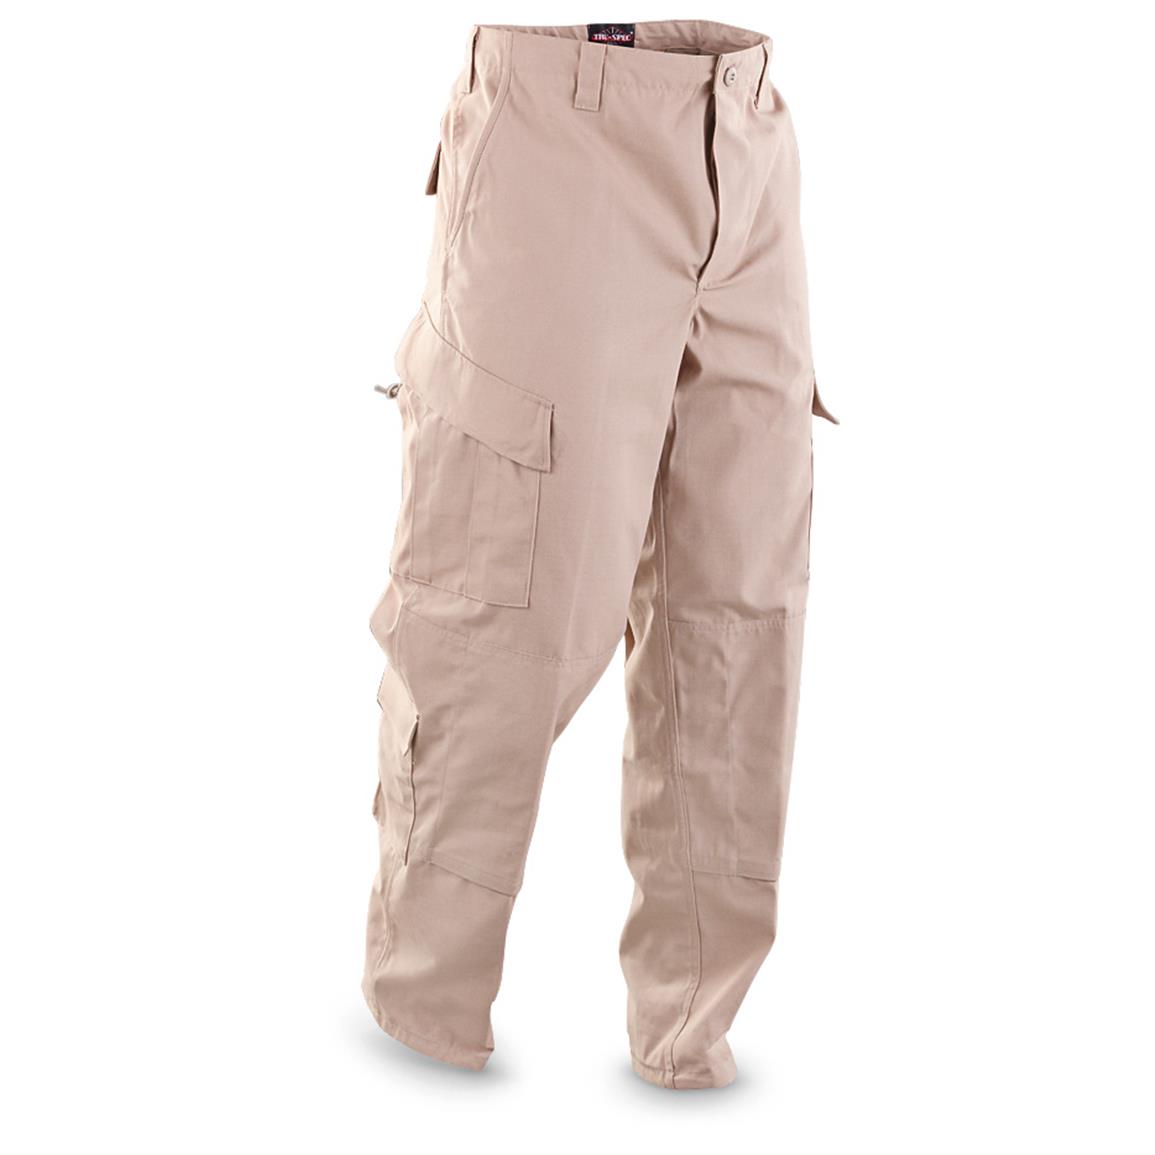 TRU-SPEC Khaki Tactical Response Pants - 622287, Tactical Clothing at ...